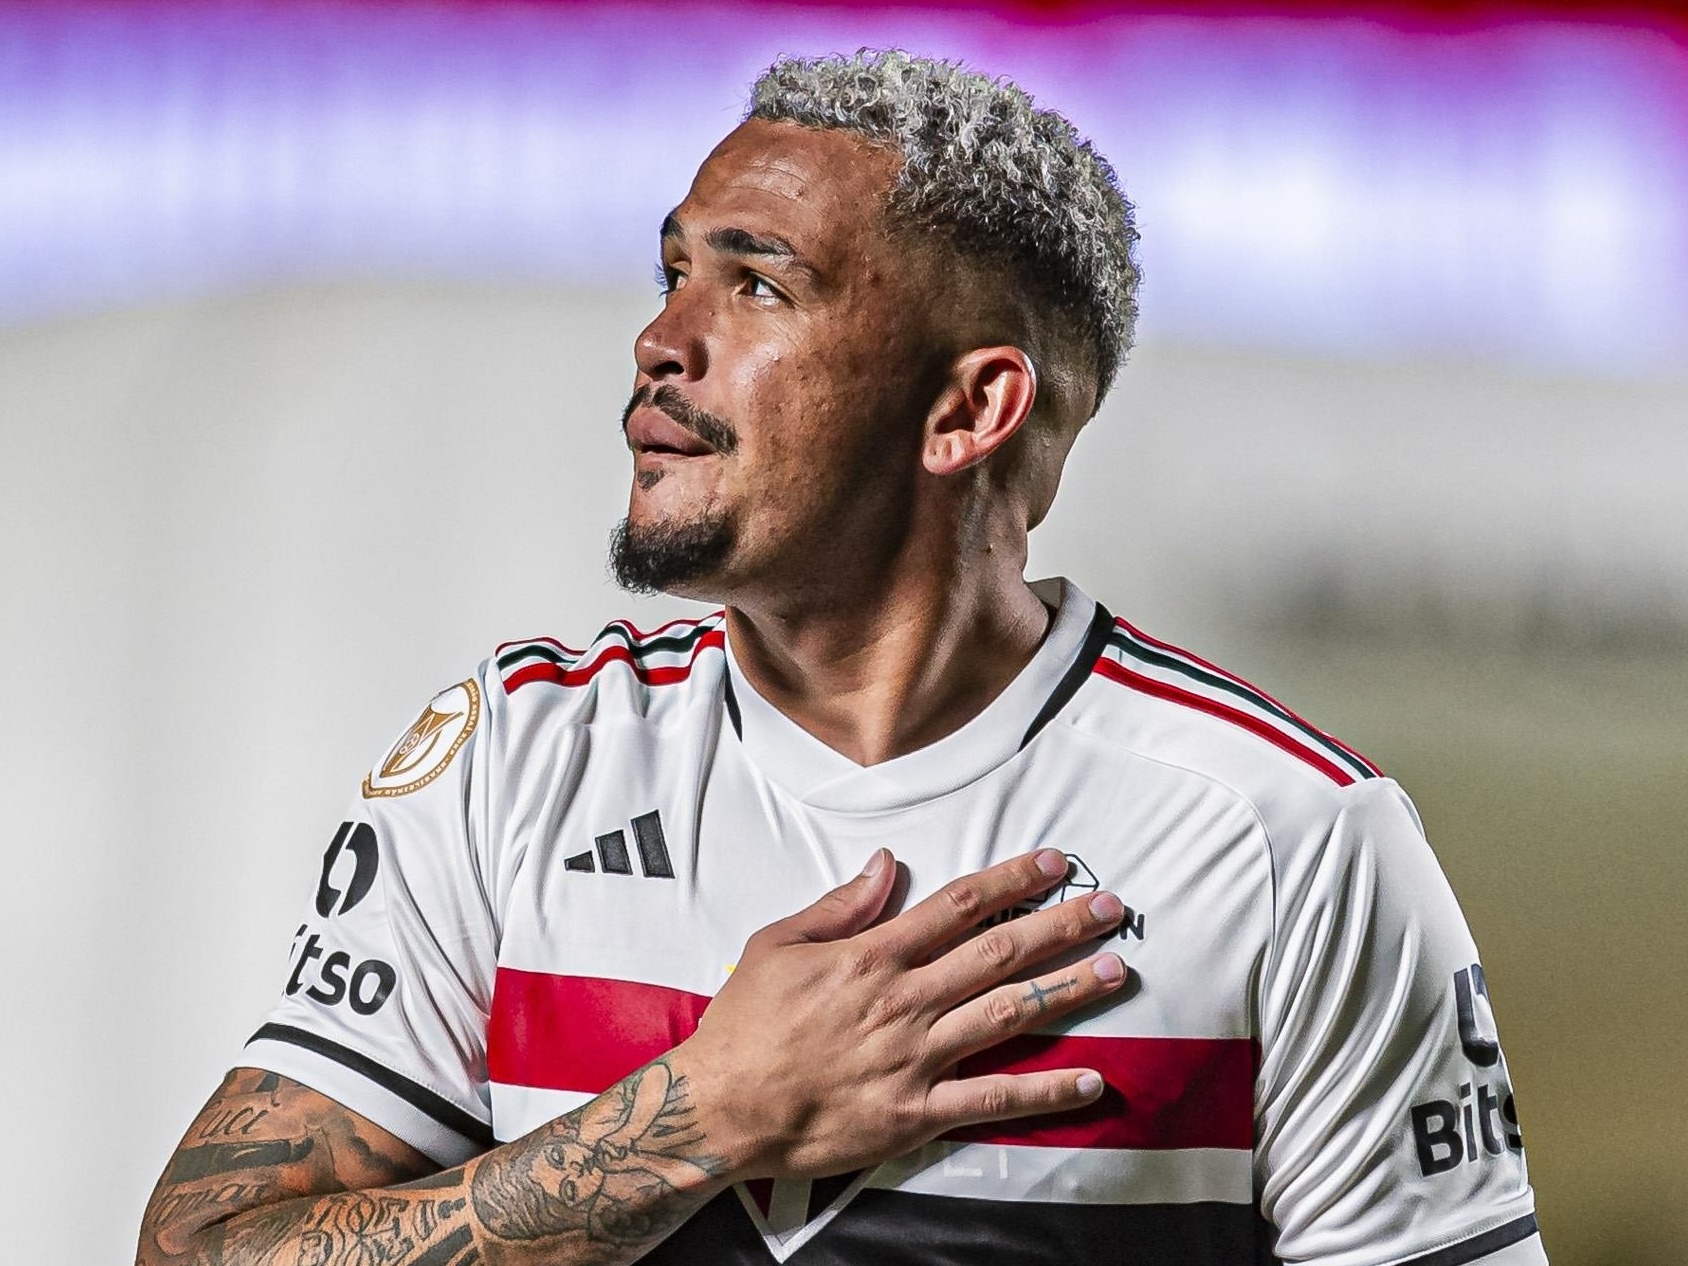 Luciano jogará em posição diferente em 2023 no São Paulo